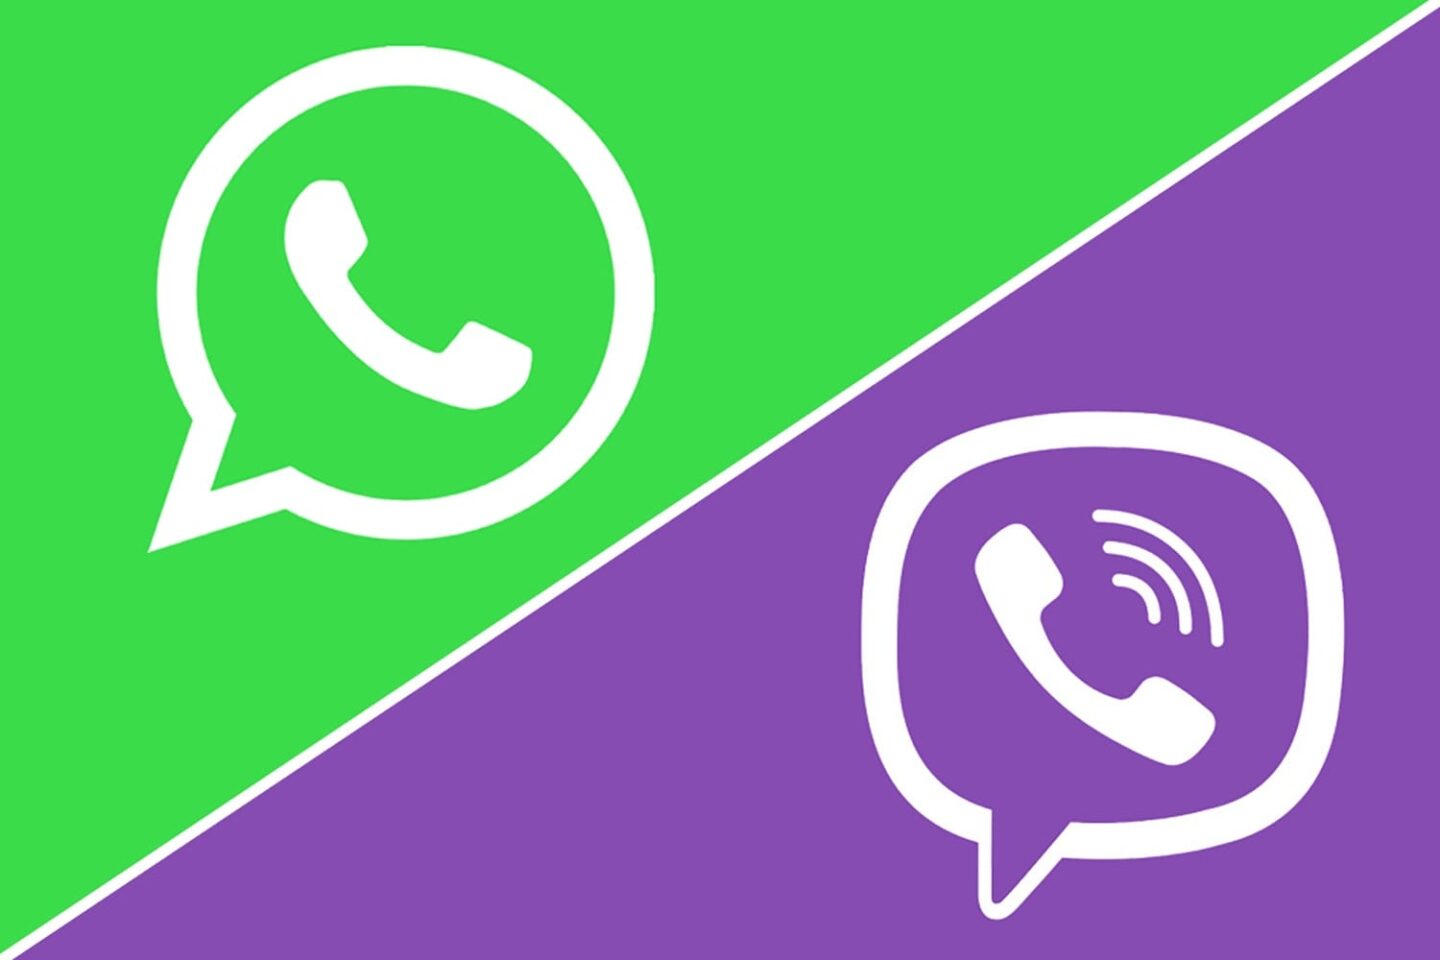 Viber към потребителите на WhatsApp: Елате при нас!